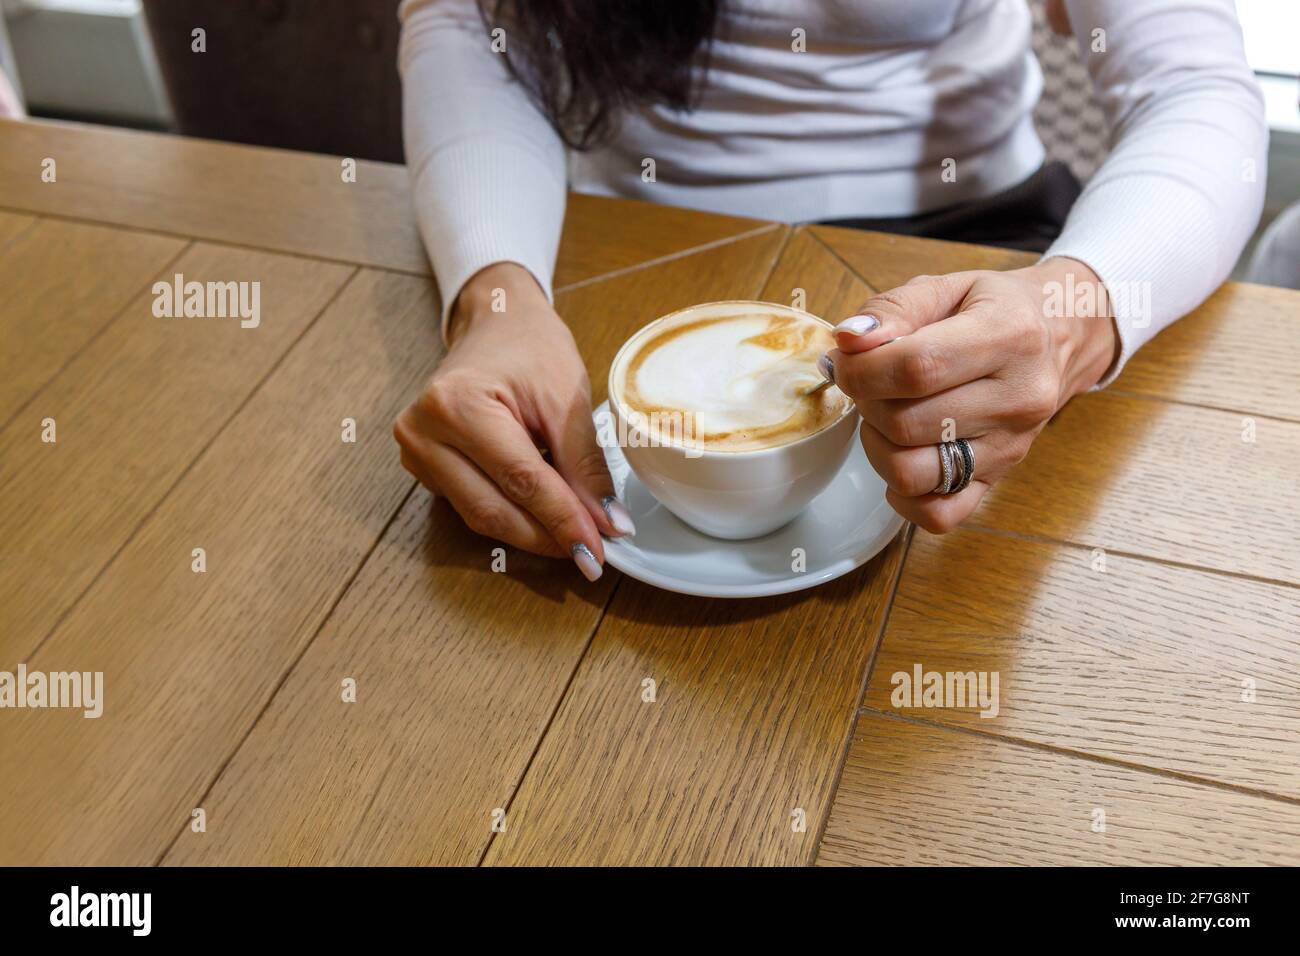 Un client dans un café agite du sucre dans une tasse de café. Le concept de restauration rapide. Banque D'Images